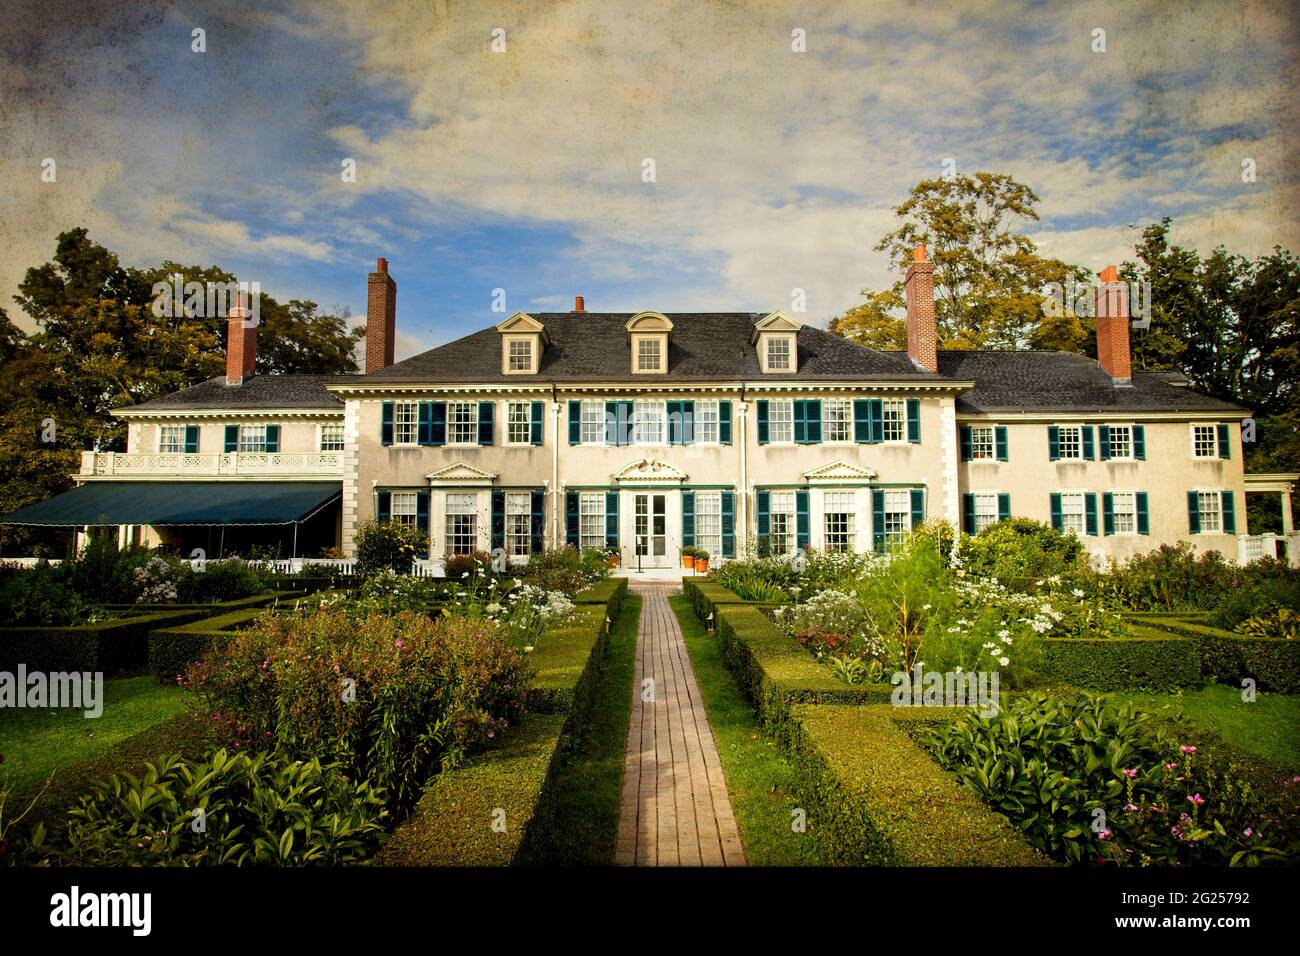 Strukturiertes und stilisiertes Foto von Robert Lincolns Sommerhaus in Manchester, Vermont; formelle Gärten, Dachgauben, Fensterläden, Hecken, wolkig. Stockfoto